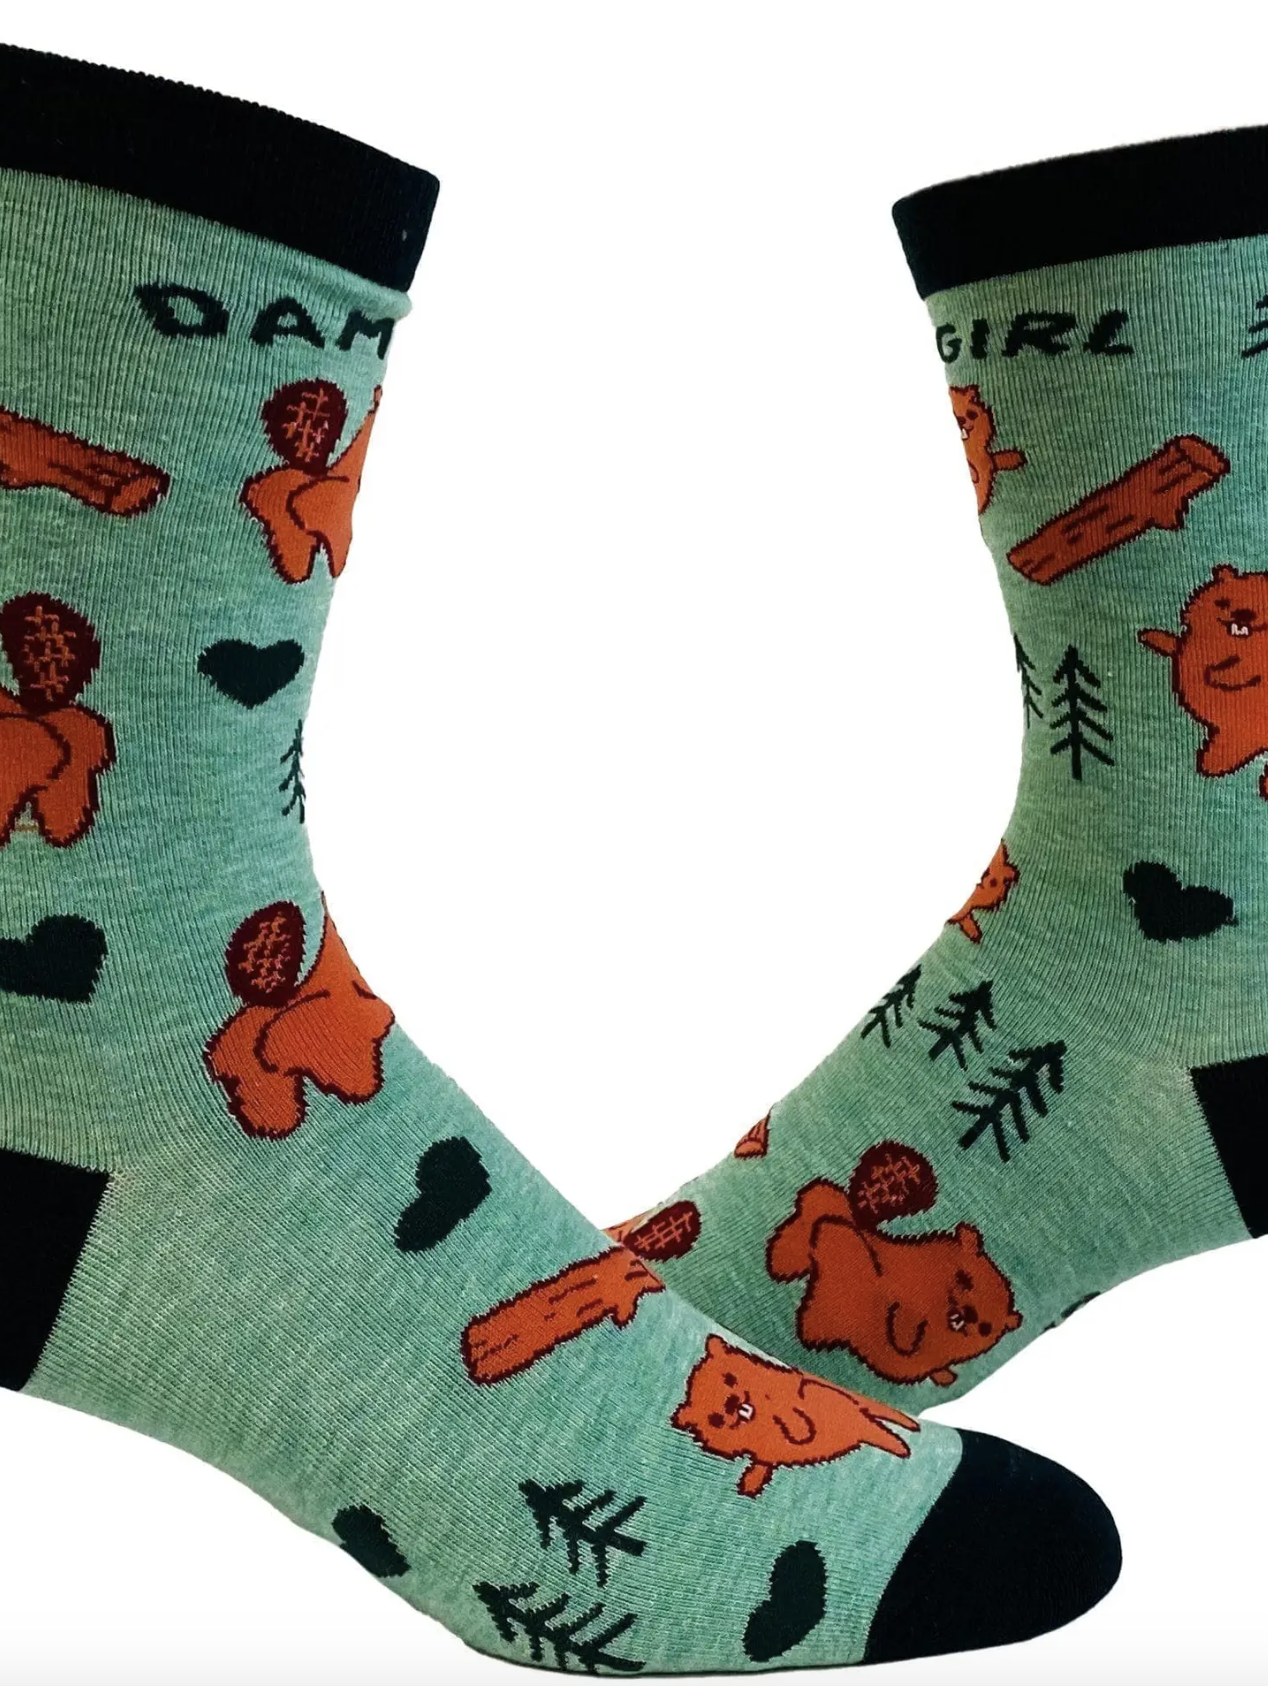 Dam Girl Socks